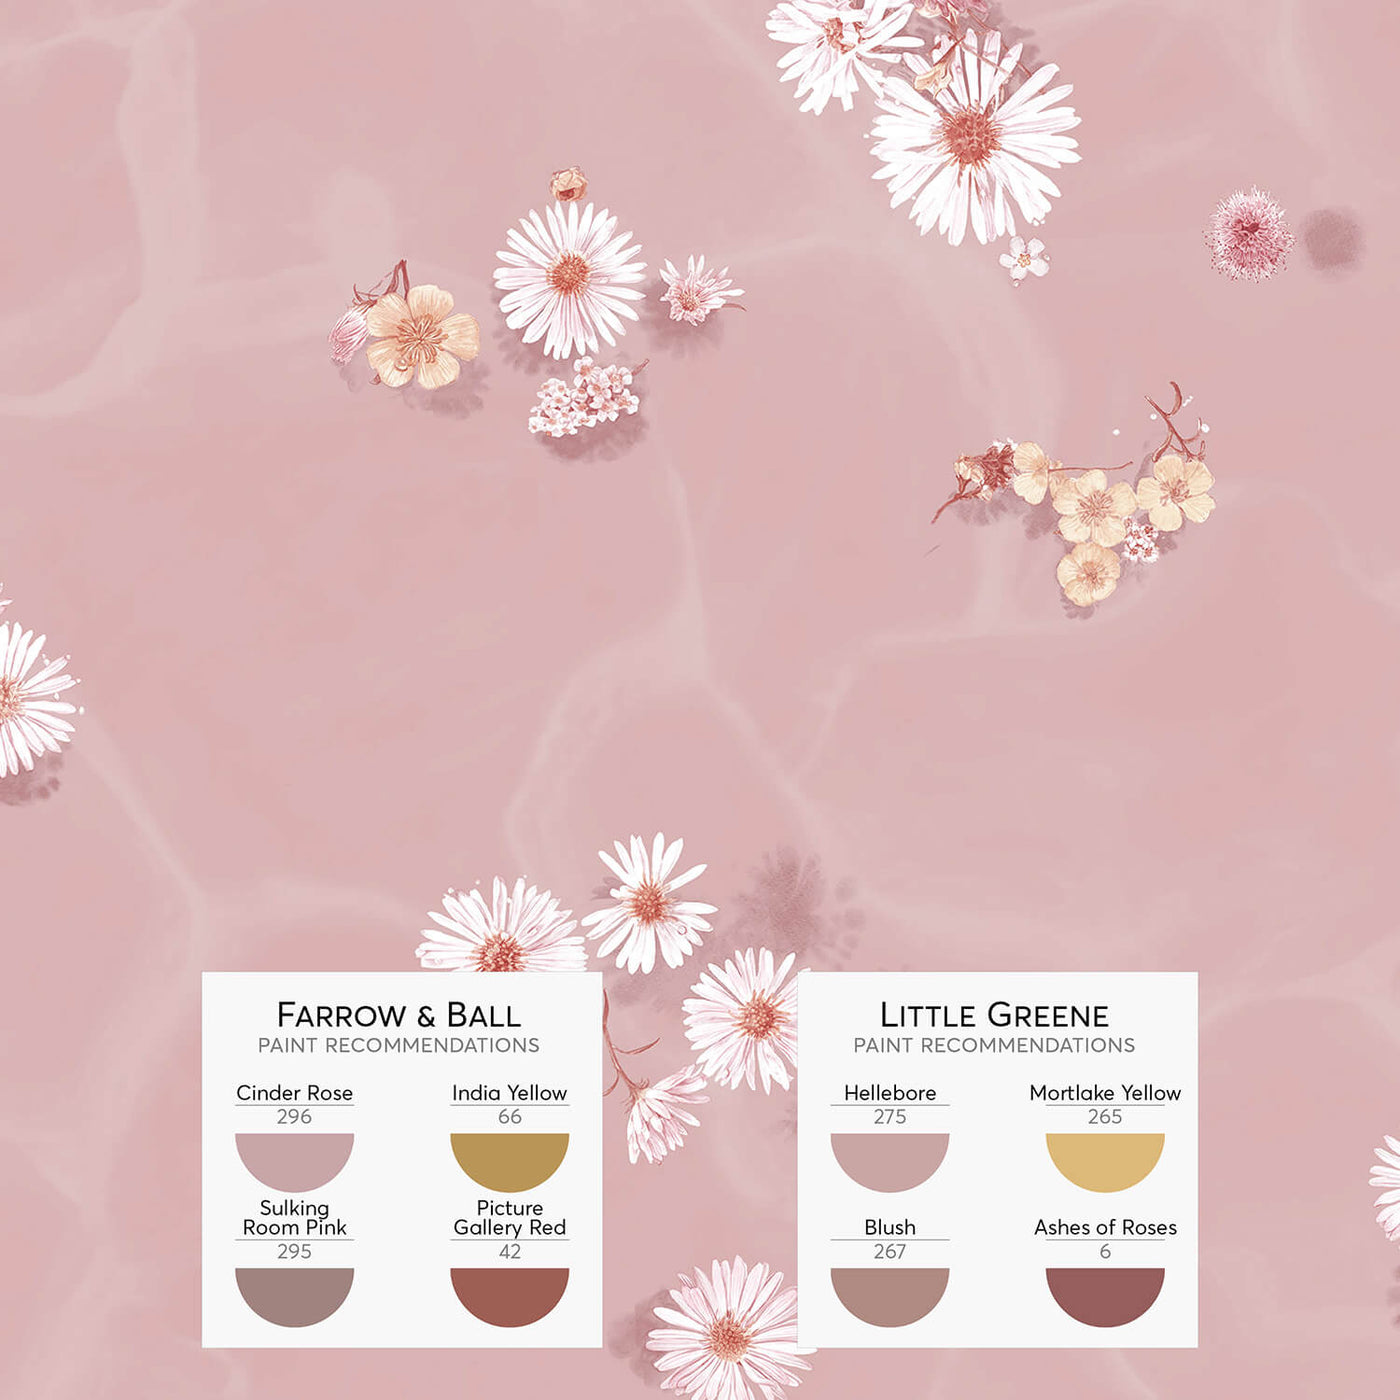 Floral Bath Mural Wallpaper - Blush